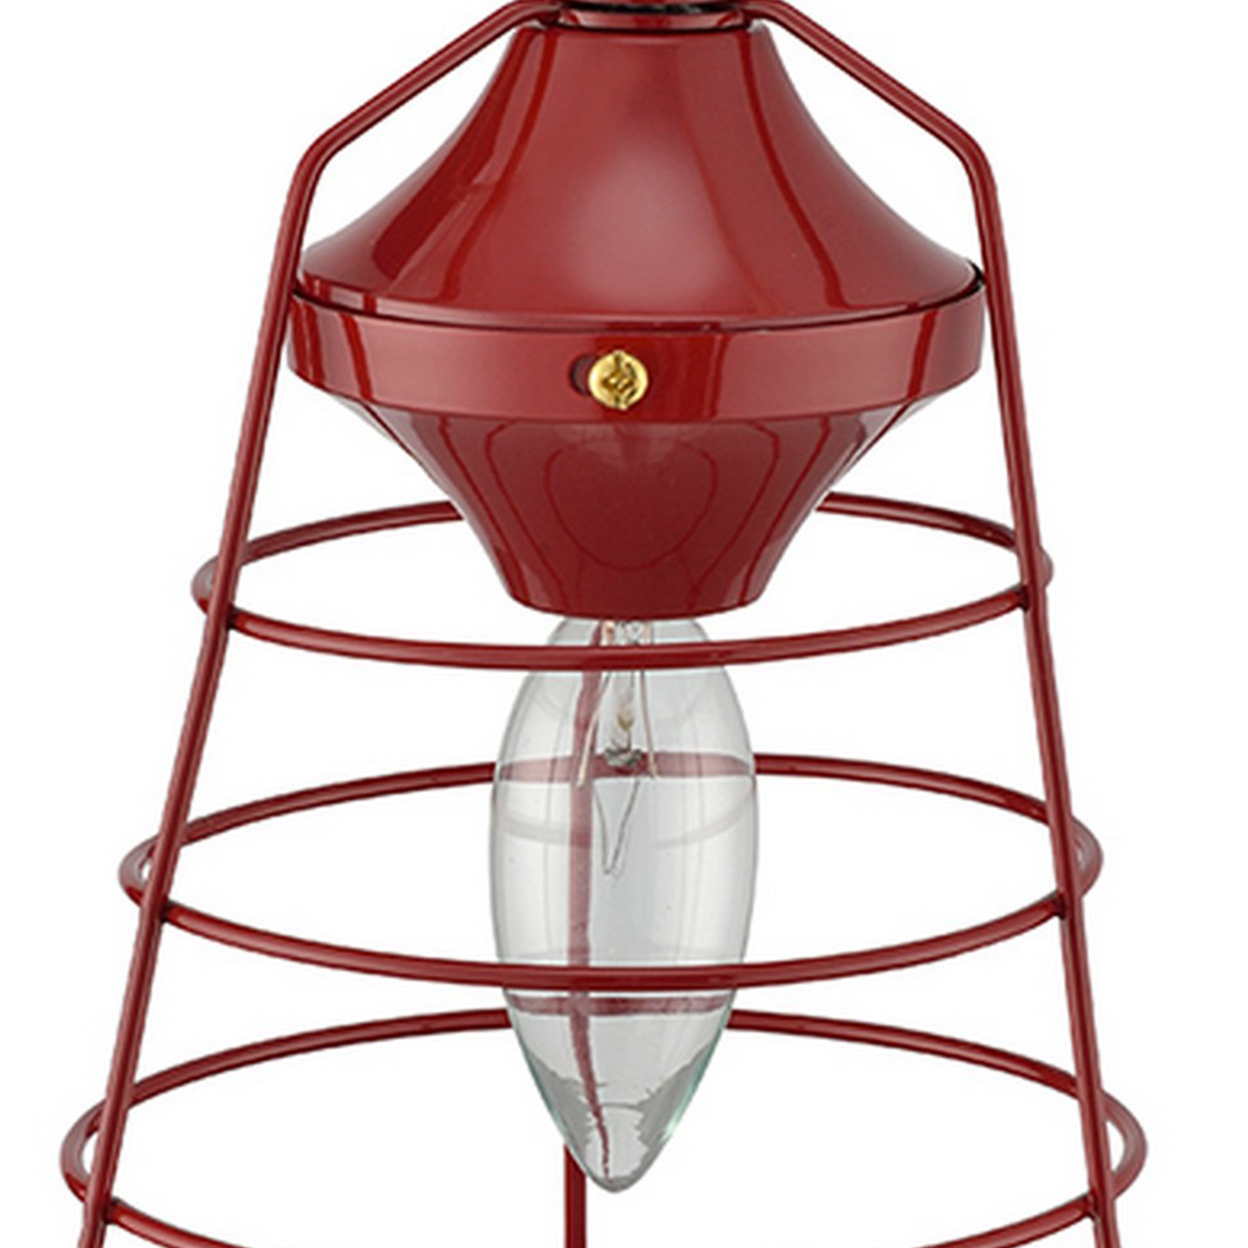 Lantern Table Lamp With Open Metal Frame, Red- Saltoro Sherpi